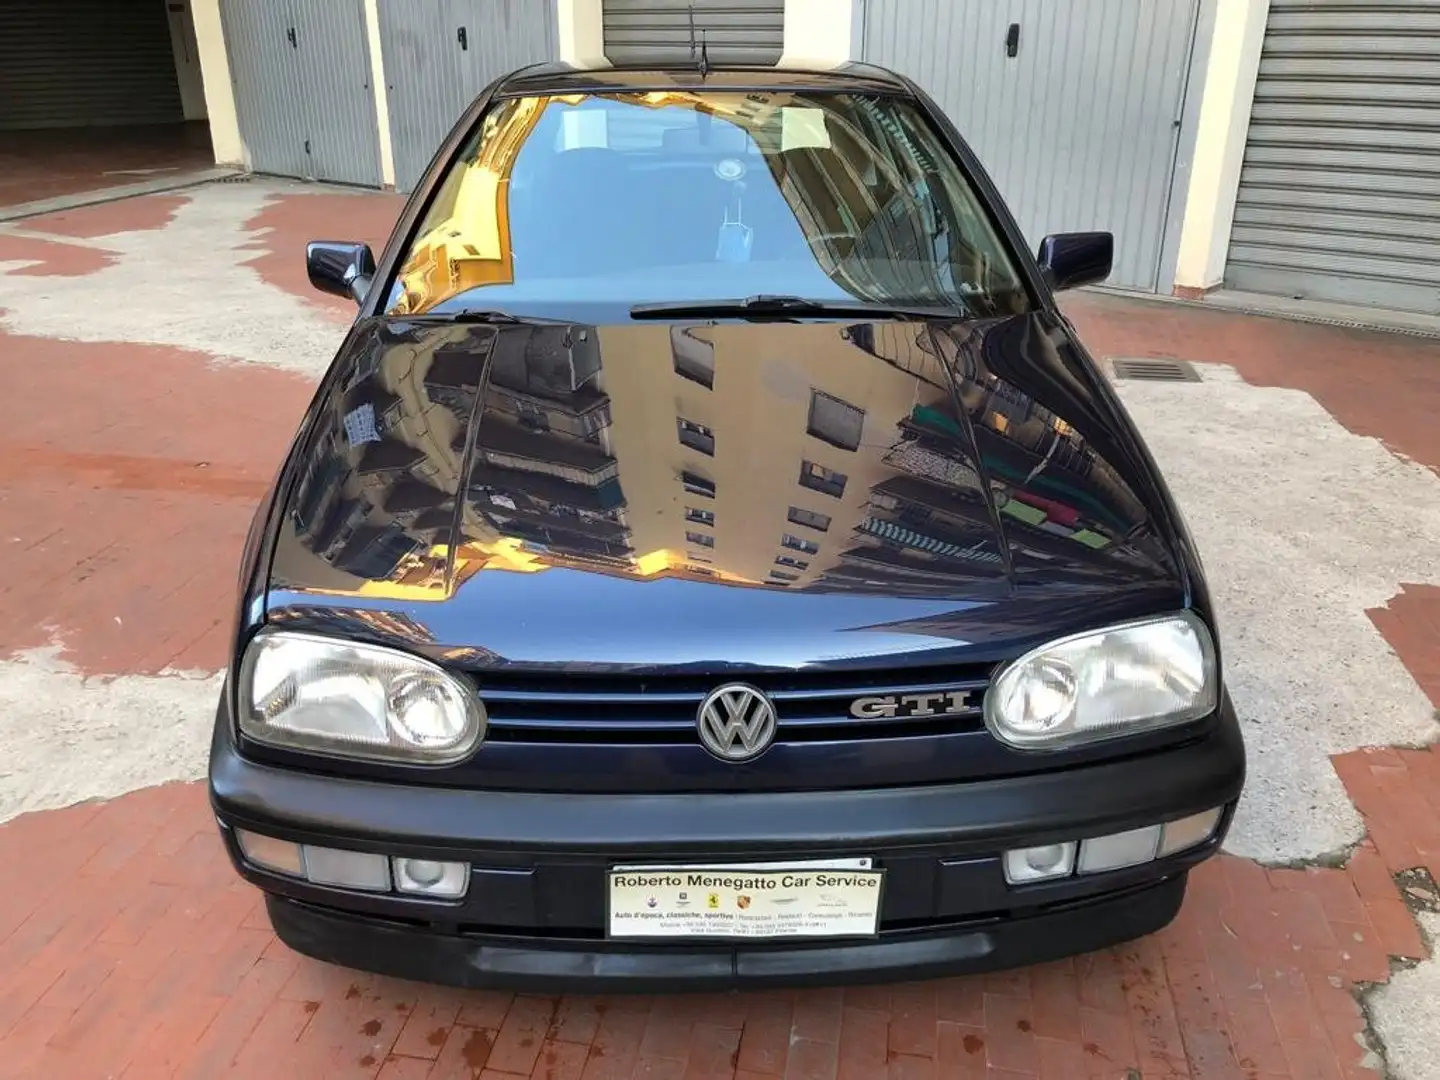 usato Volkswagen Golf City car a Firenze - Fi per € 9.500,-